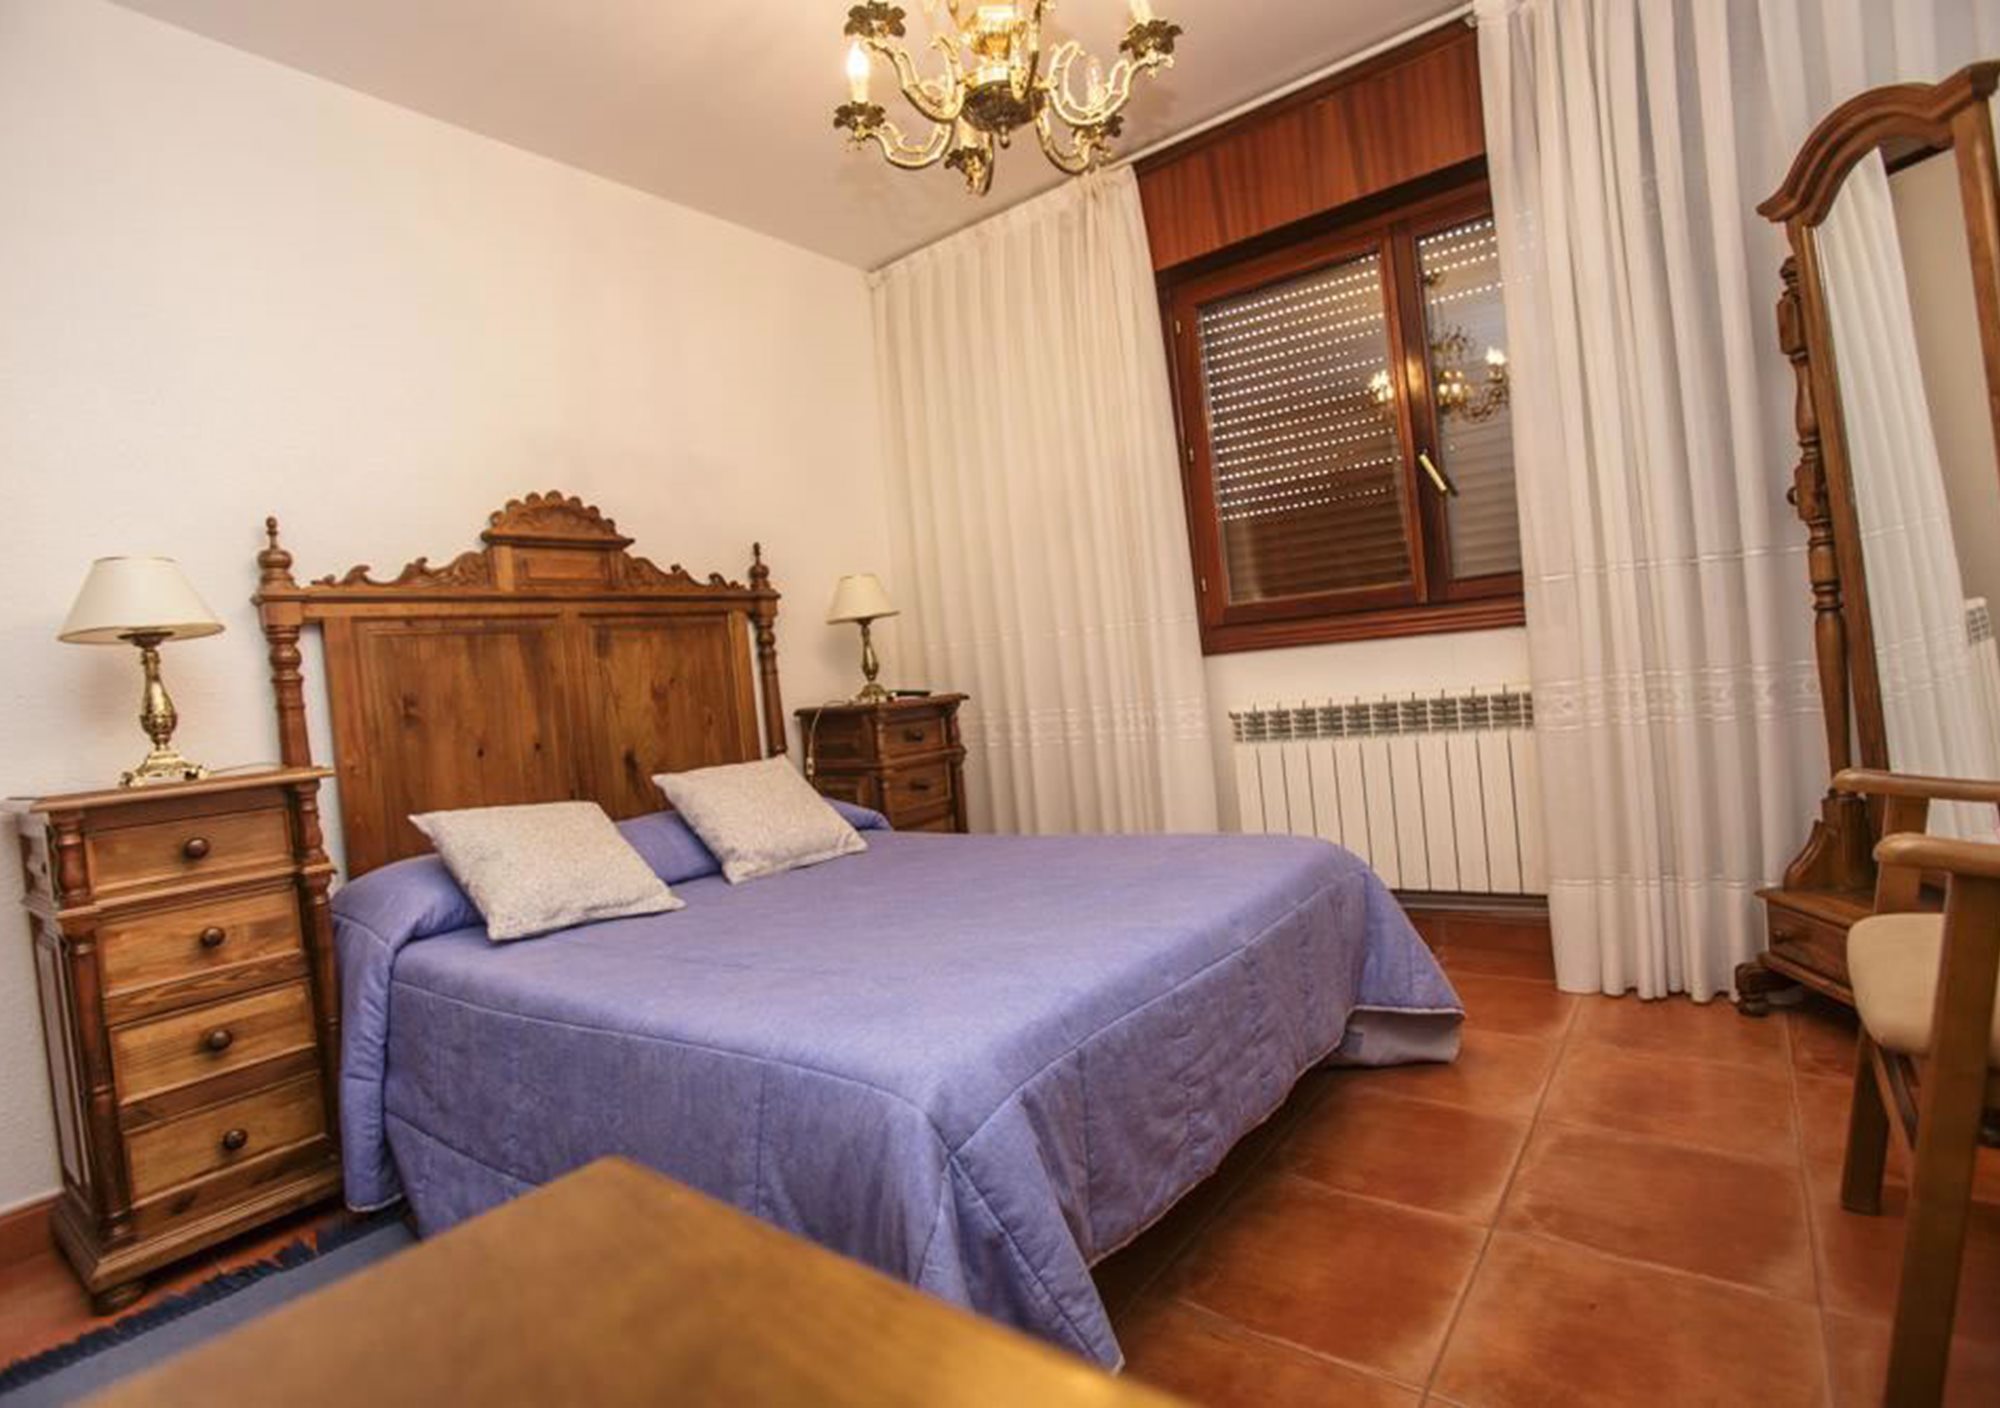 Escapadas a La Rioja ofertas especial fin de semana finde alojamiento hostal hotel rural